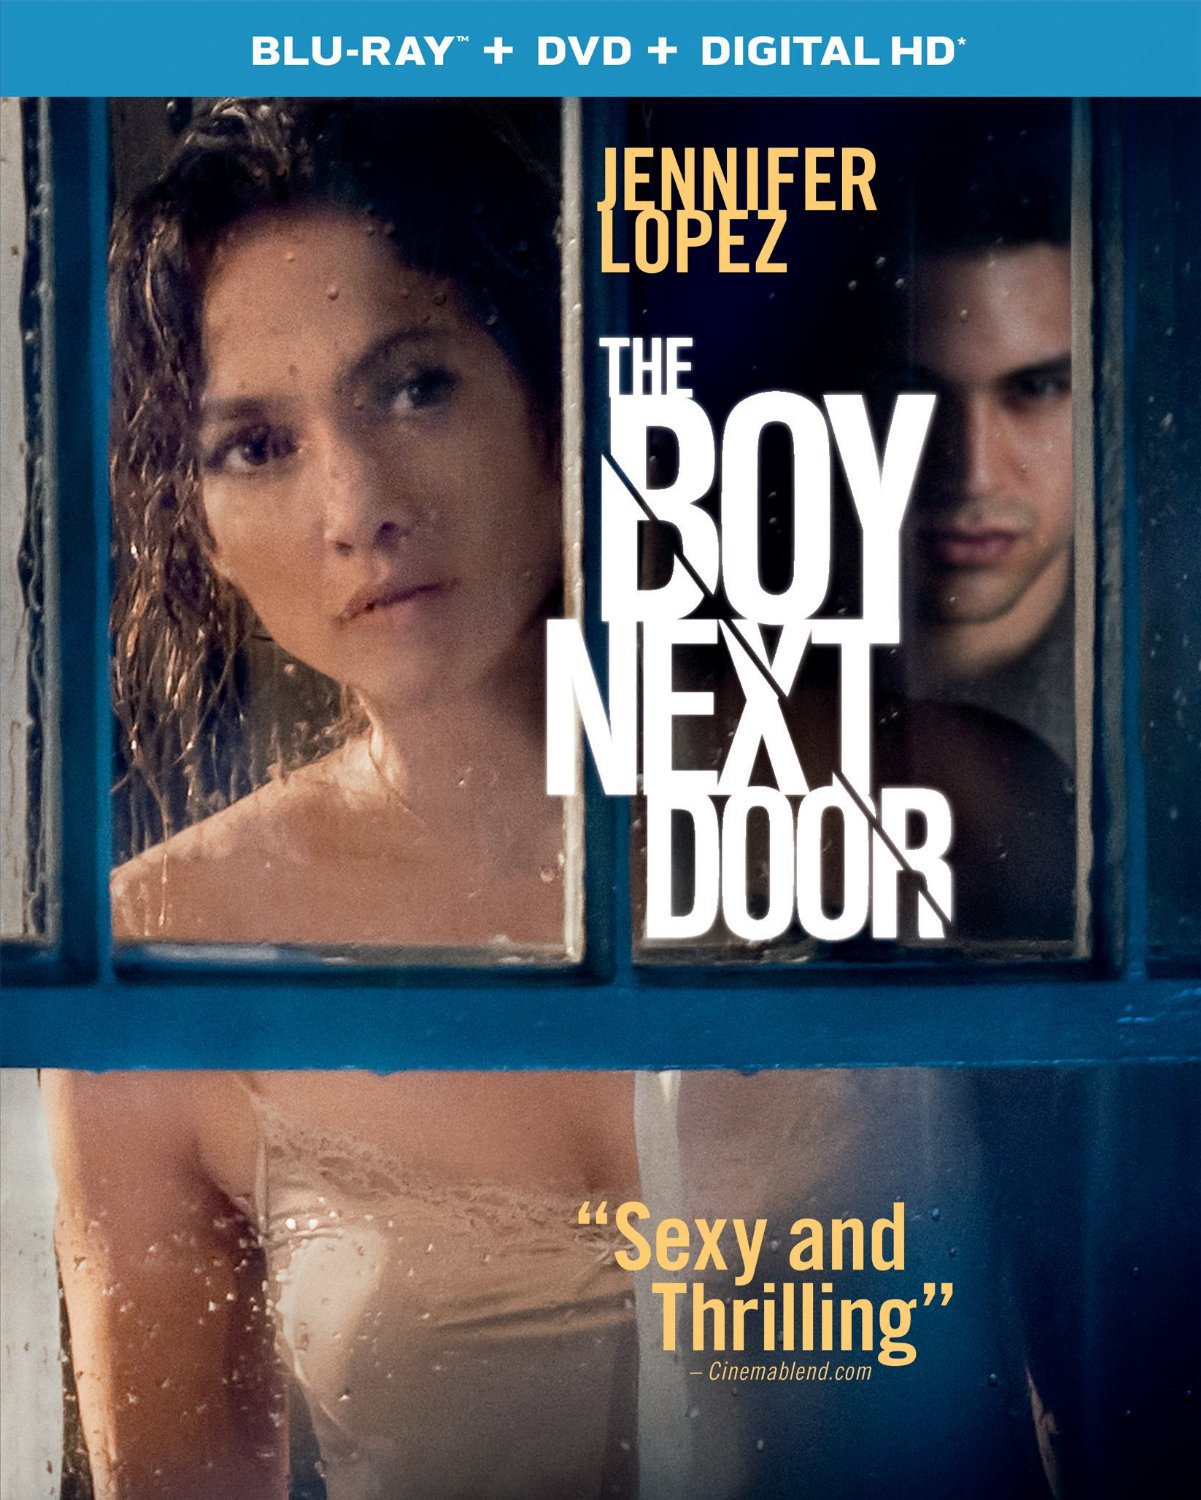 Boy Next Door, The